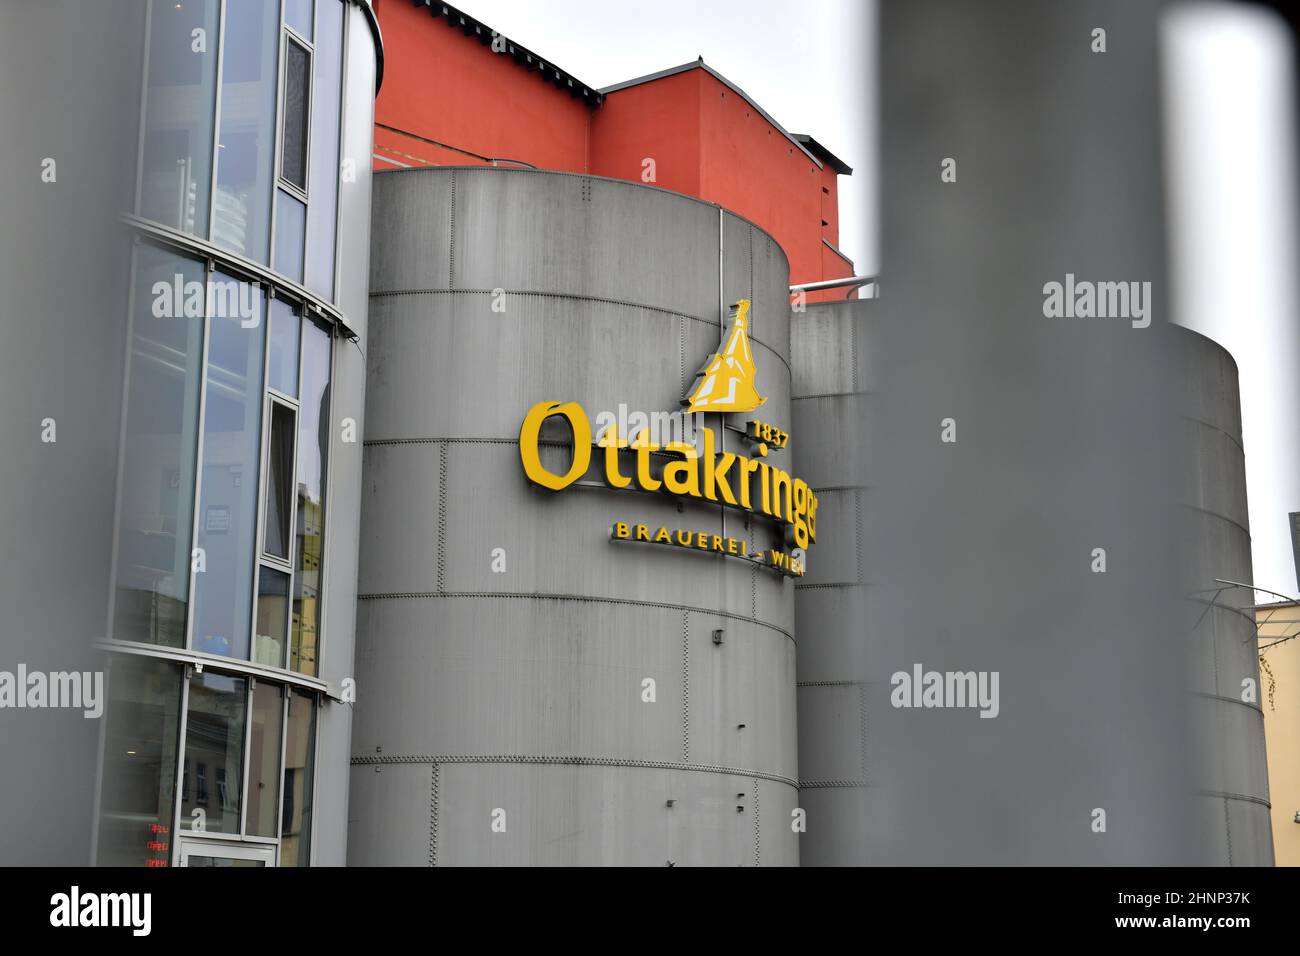 Brauerei Ottakring in Wien, Österreich, Europa - Brewery Ottakring in Vienna, Austria, Europe Stock Photo